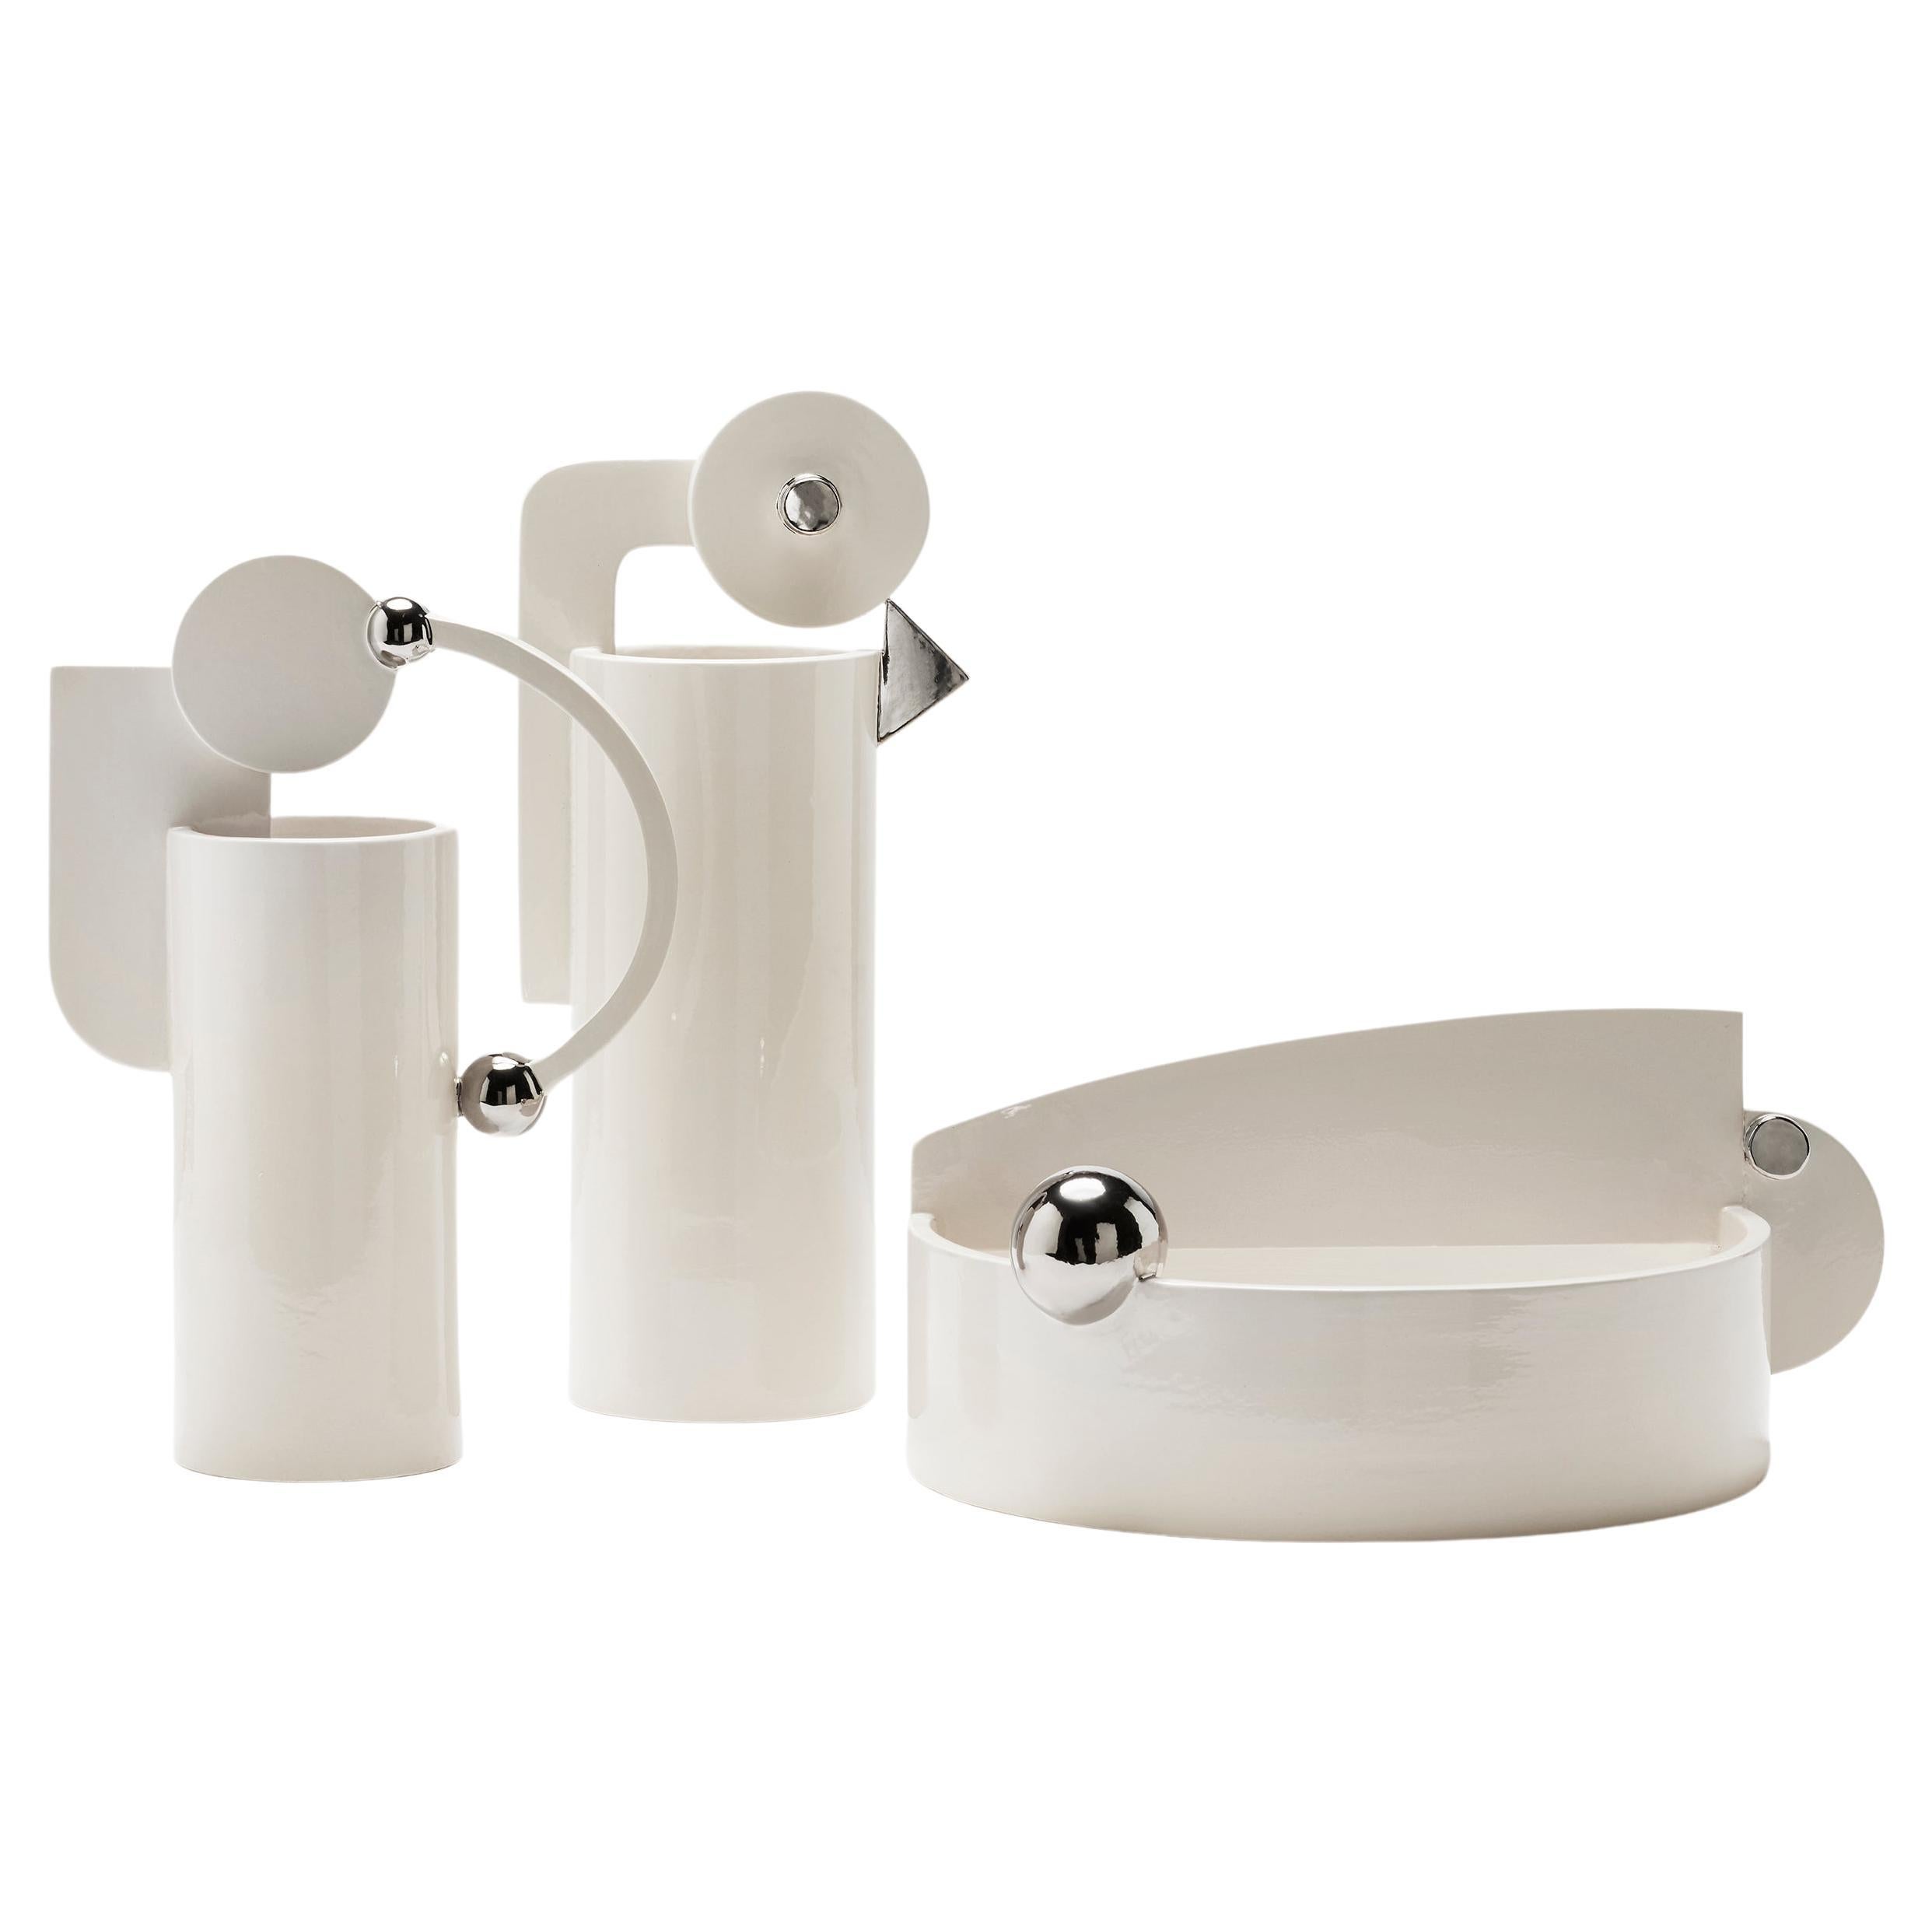 Set of Three Ceramic Vases White and Real Platinum, Glossy Modern Chic Luxury